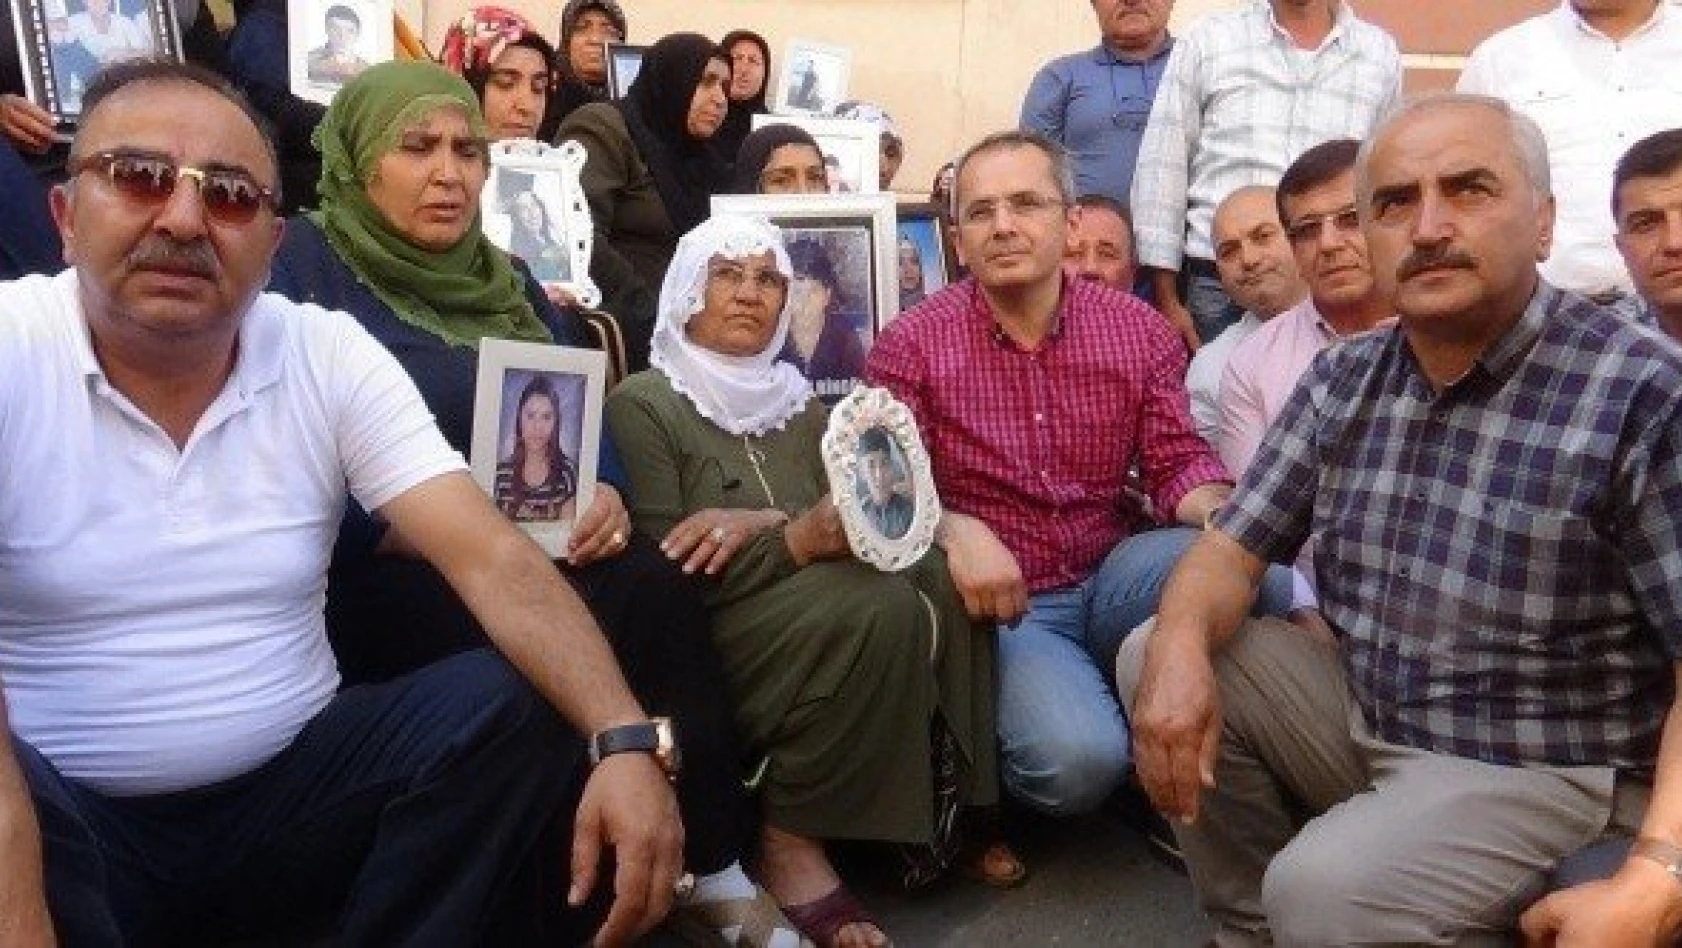 Kaymakam Pişkin'den, HDP önünde evlat nöbeti tutan ailelere destek ziyareti